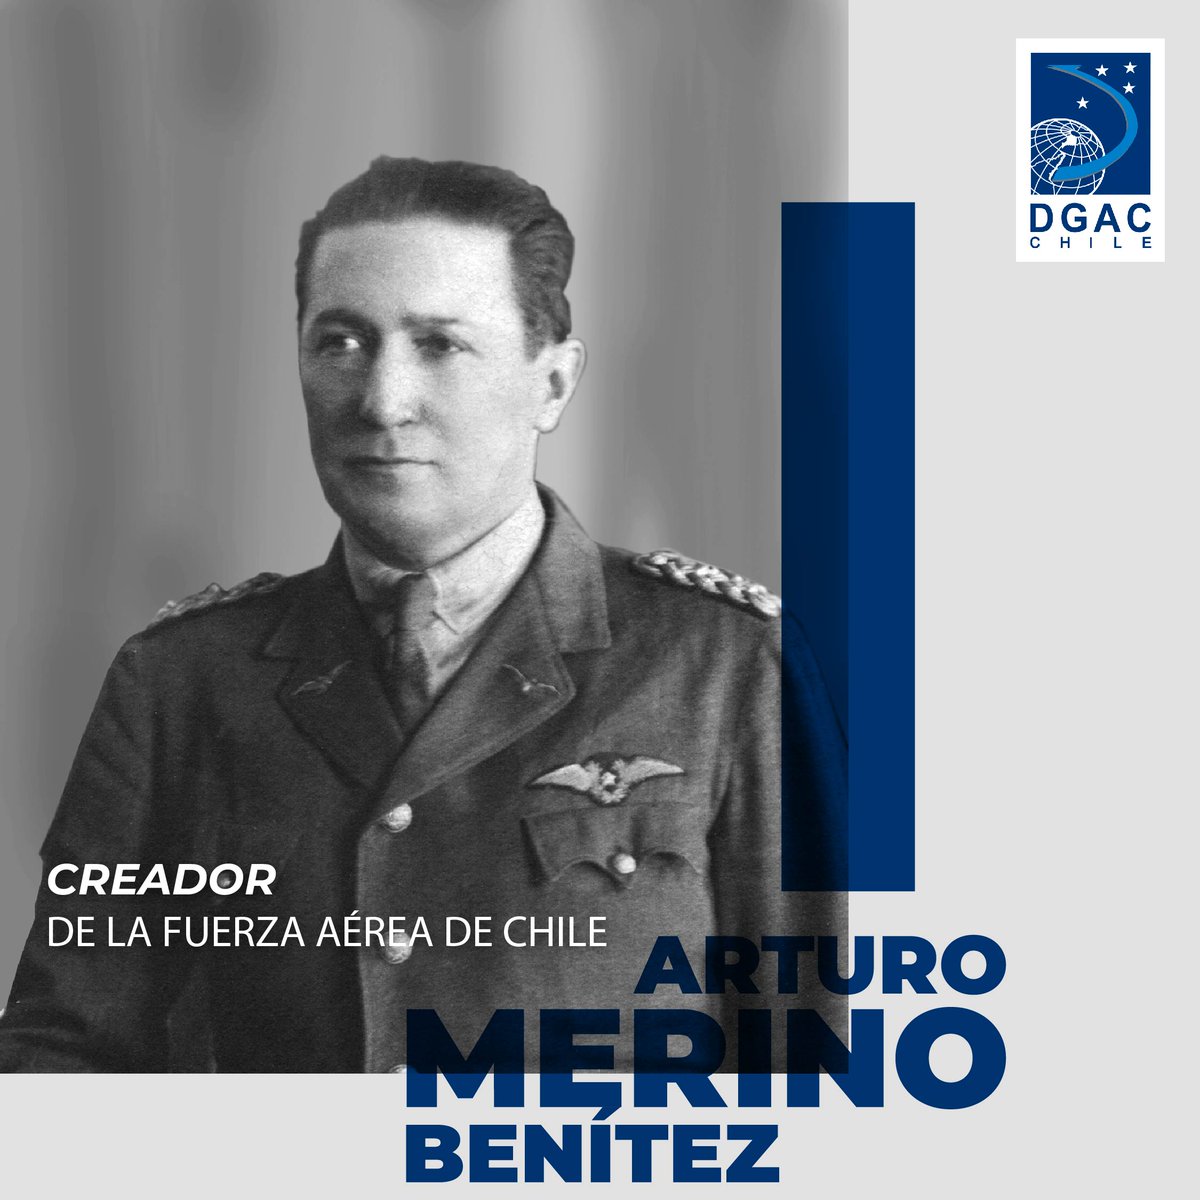 #DatosDGAC Mañana se conmemora un nuevo aniversario del natalicio del prócer aeronáutico y creador de la @dgacchile Arturo Merino Benítez, recordamos su obra y visión de la aeronáutica nacional como fundador de la @FACh_Chile entre otras instituciones.